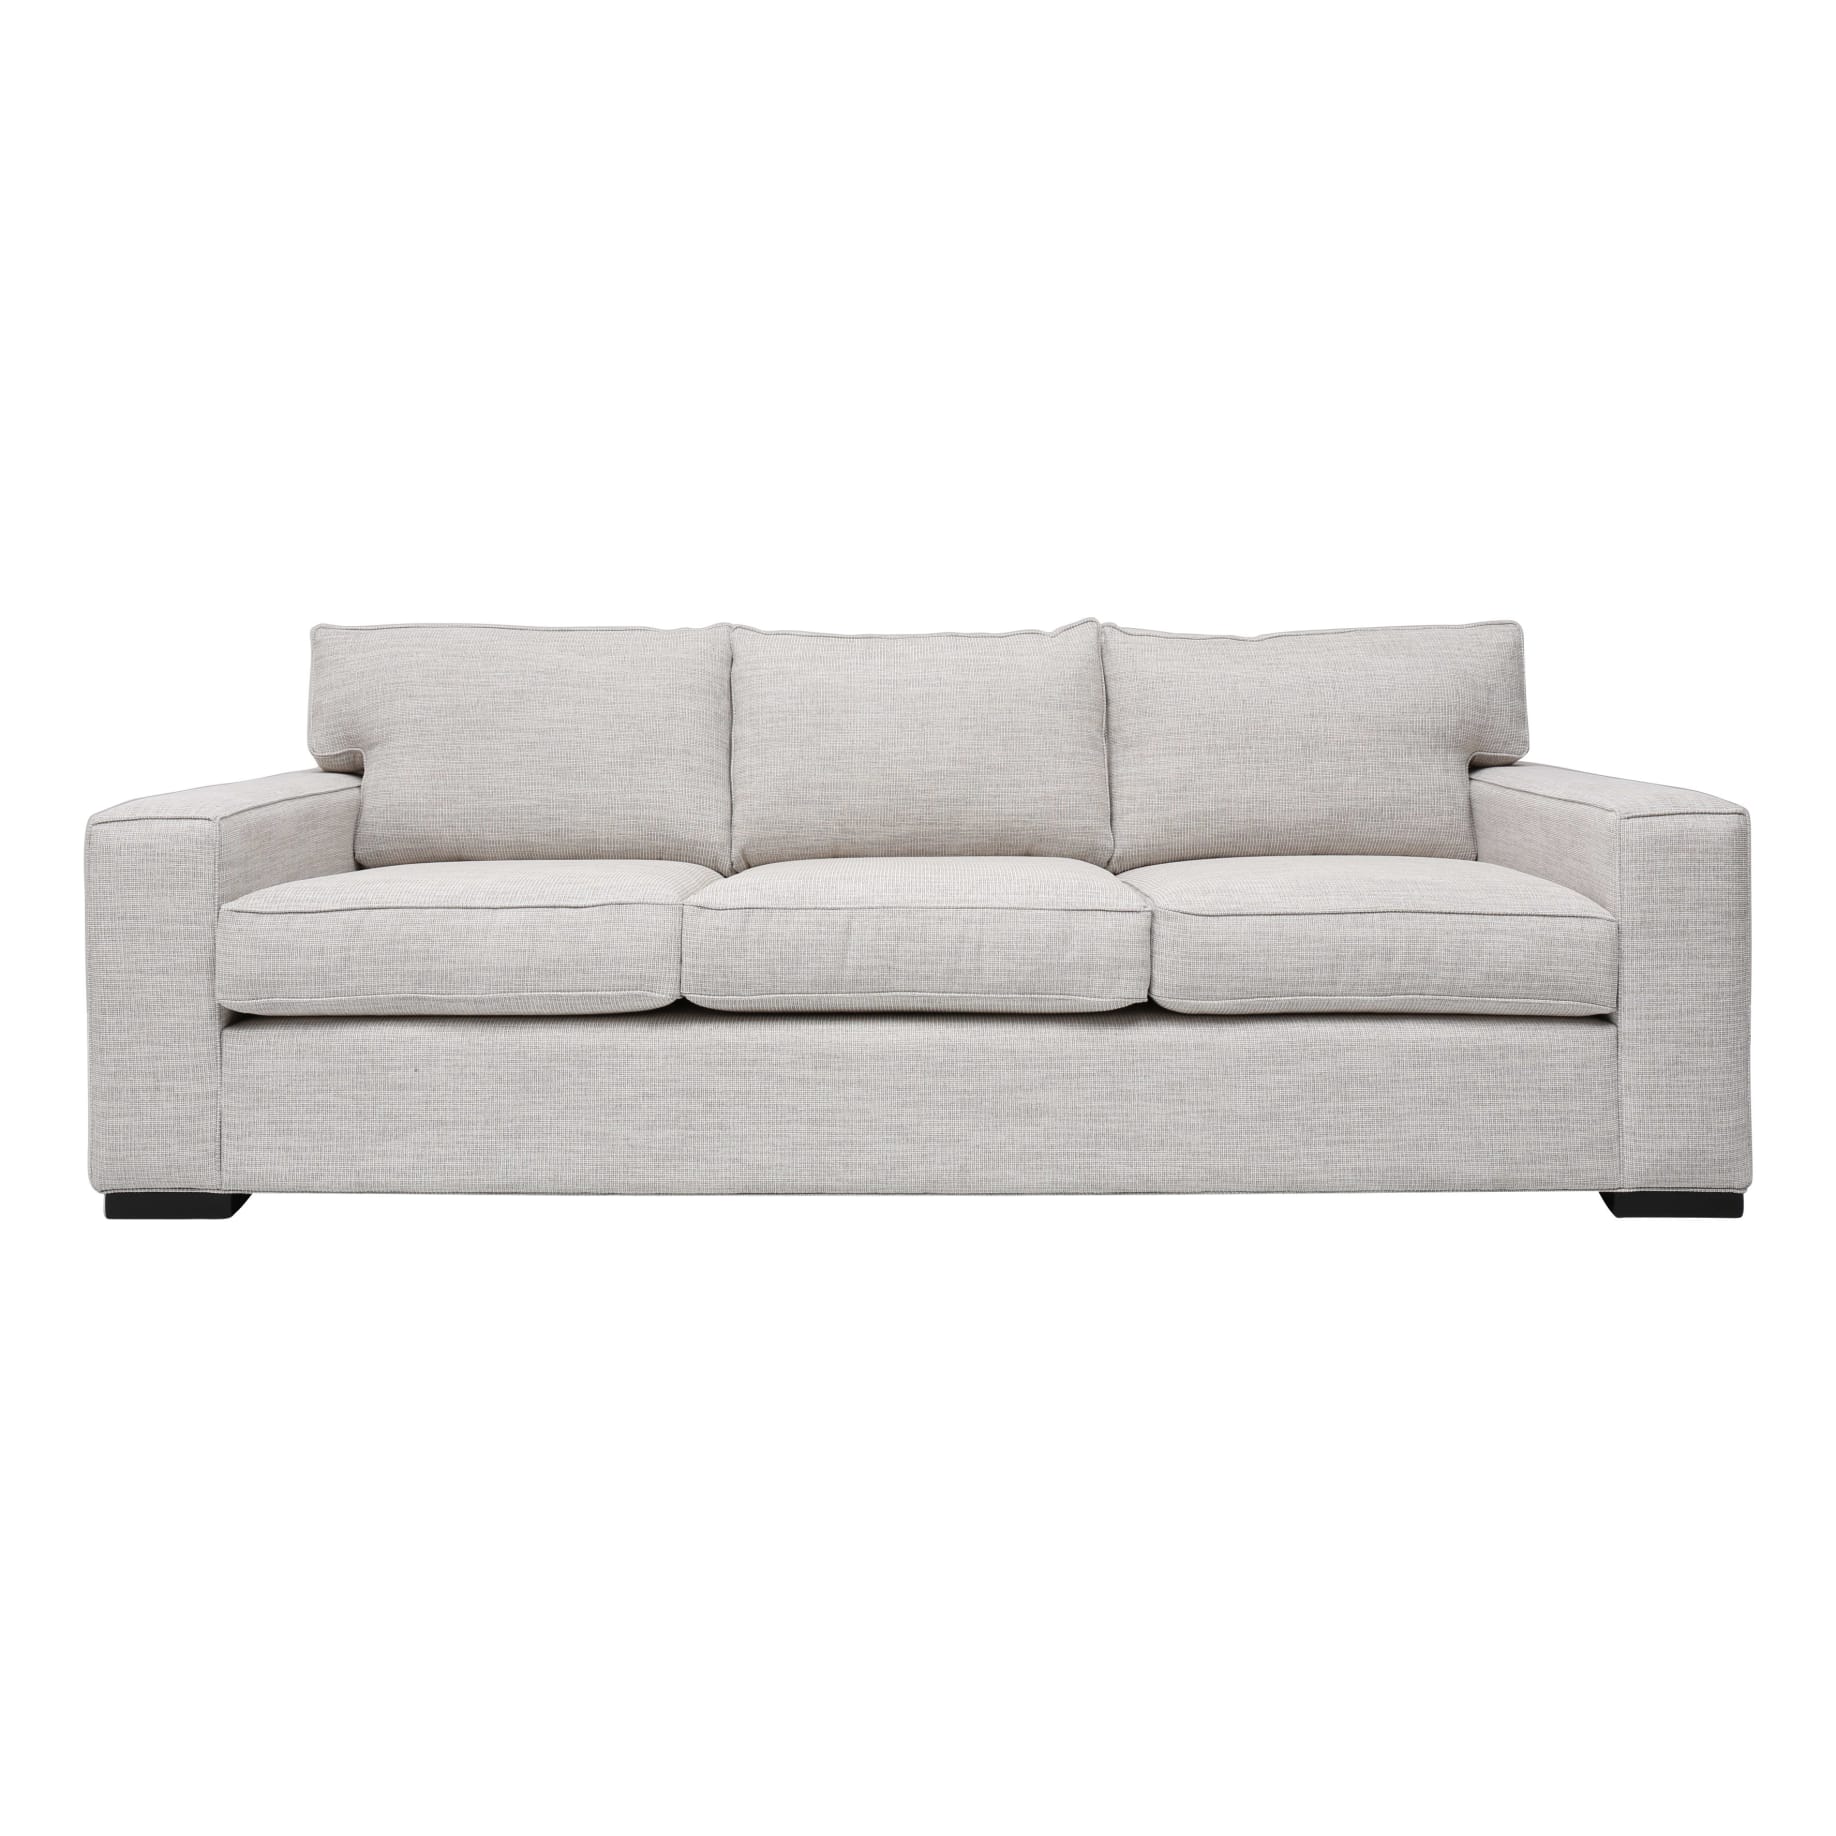 Ashton 3 Seater Sofa in Selected Fabrics